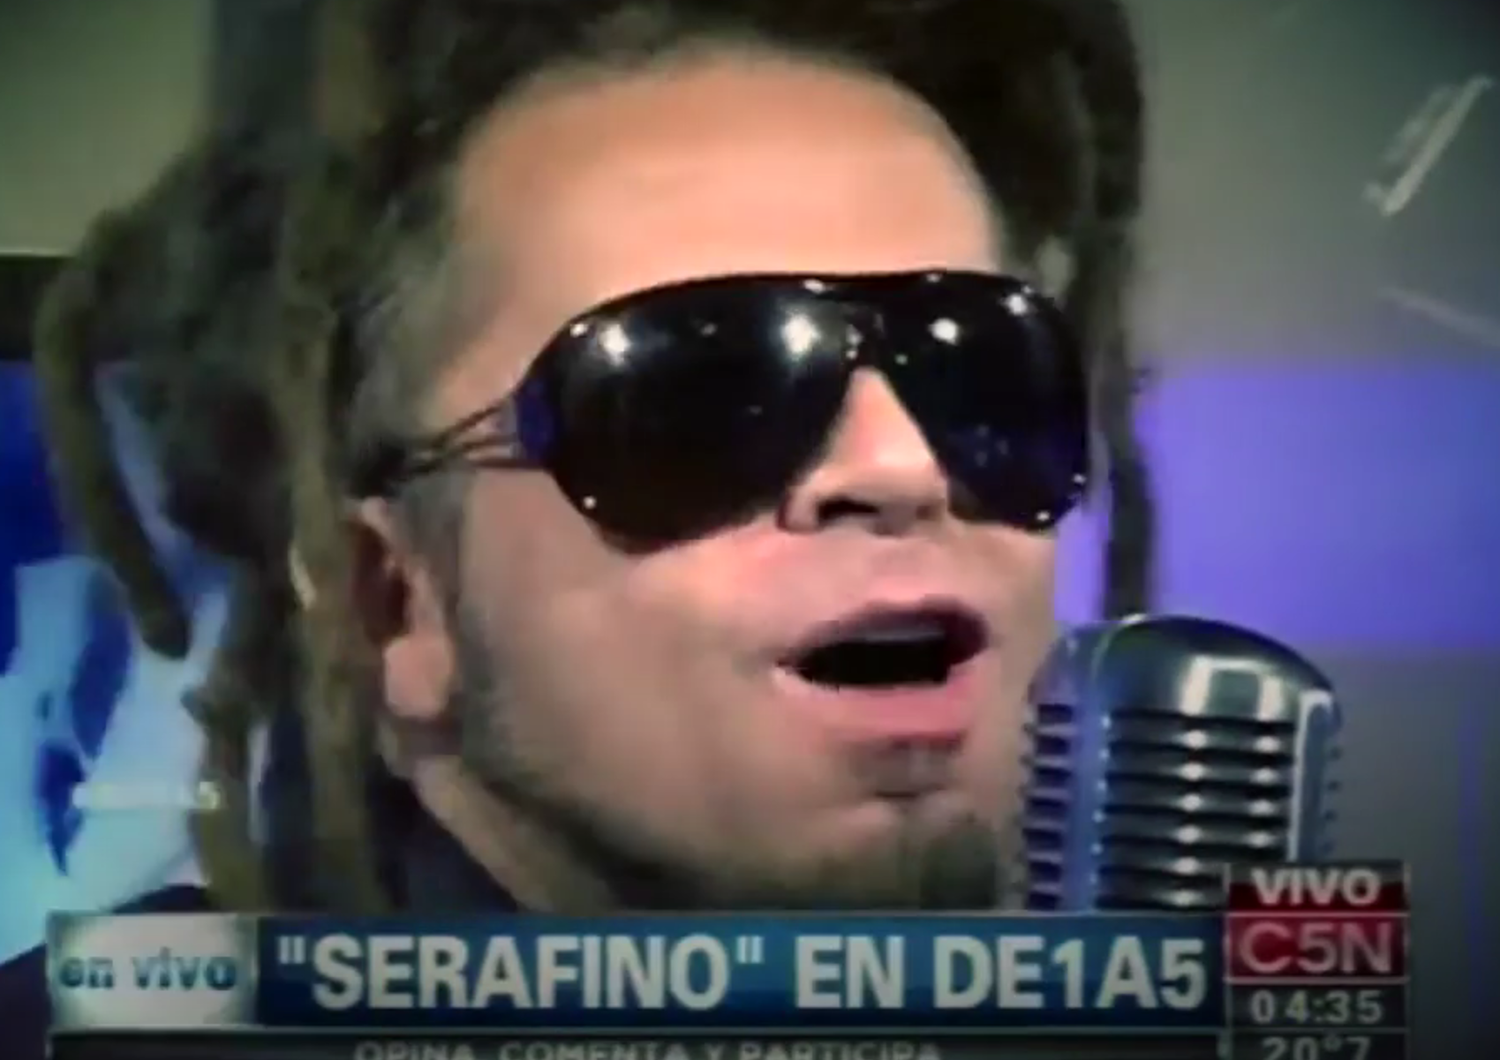 Domenico Serafino in un'apparizione televisiva sul canale C5N in Argentina